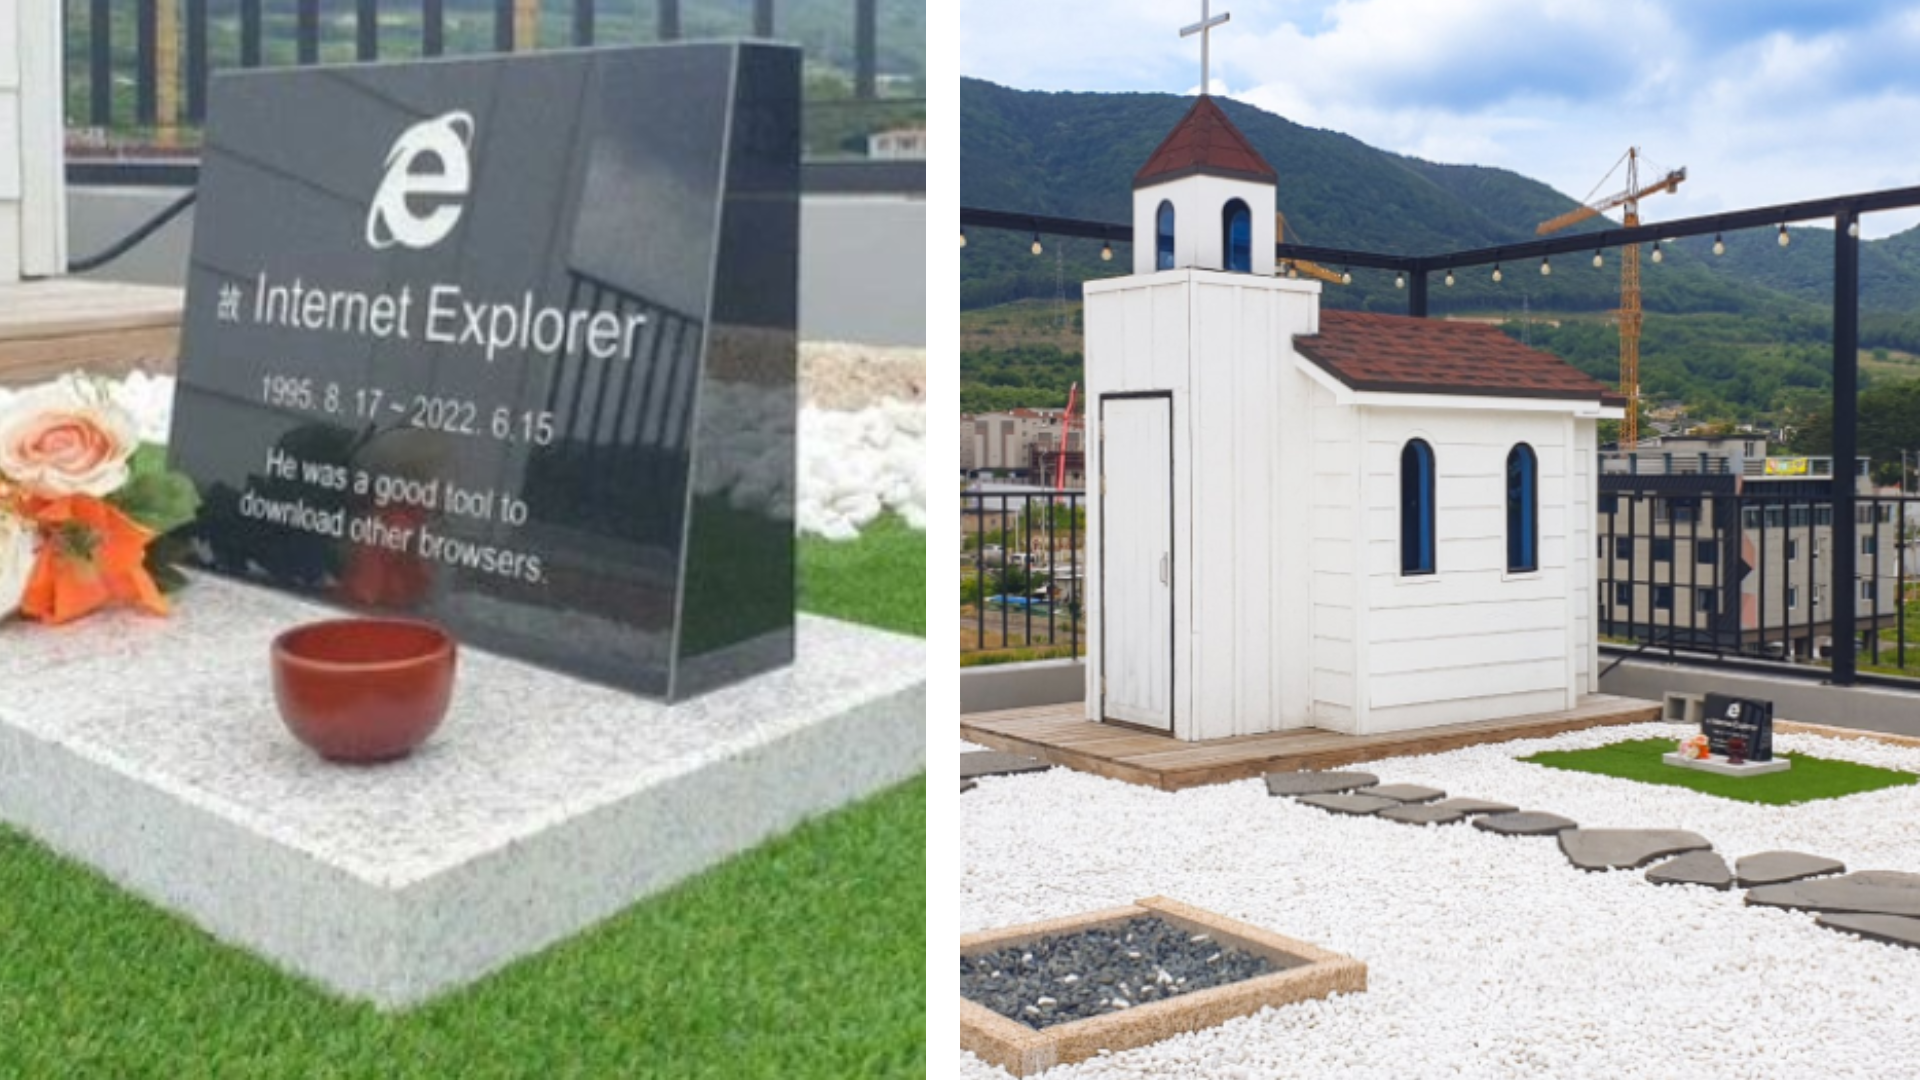 Repose en paix, Internet Explorer : une pierre tombale a été érigée en son honneur en Corée du Sud